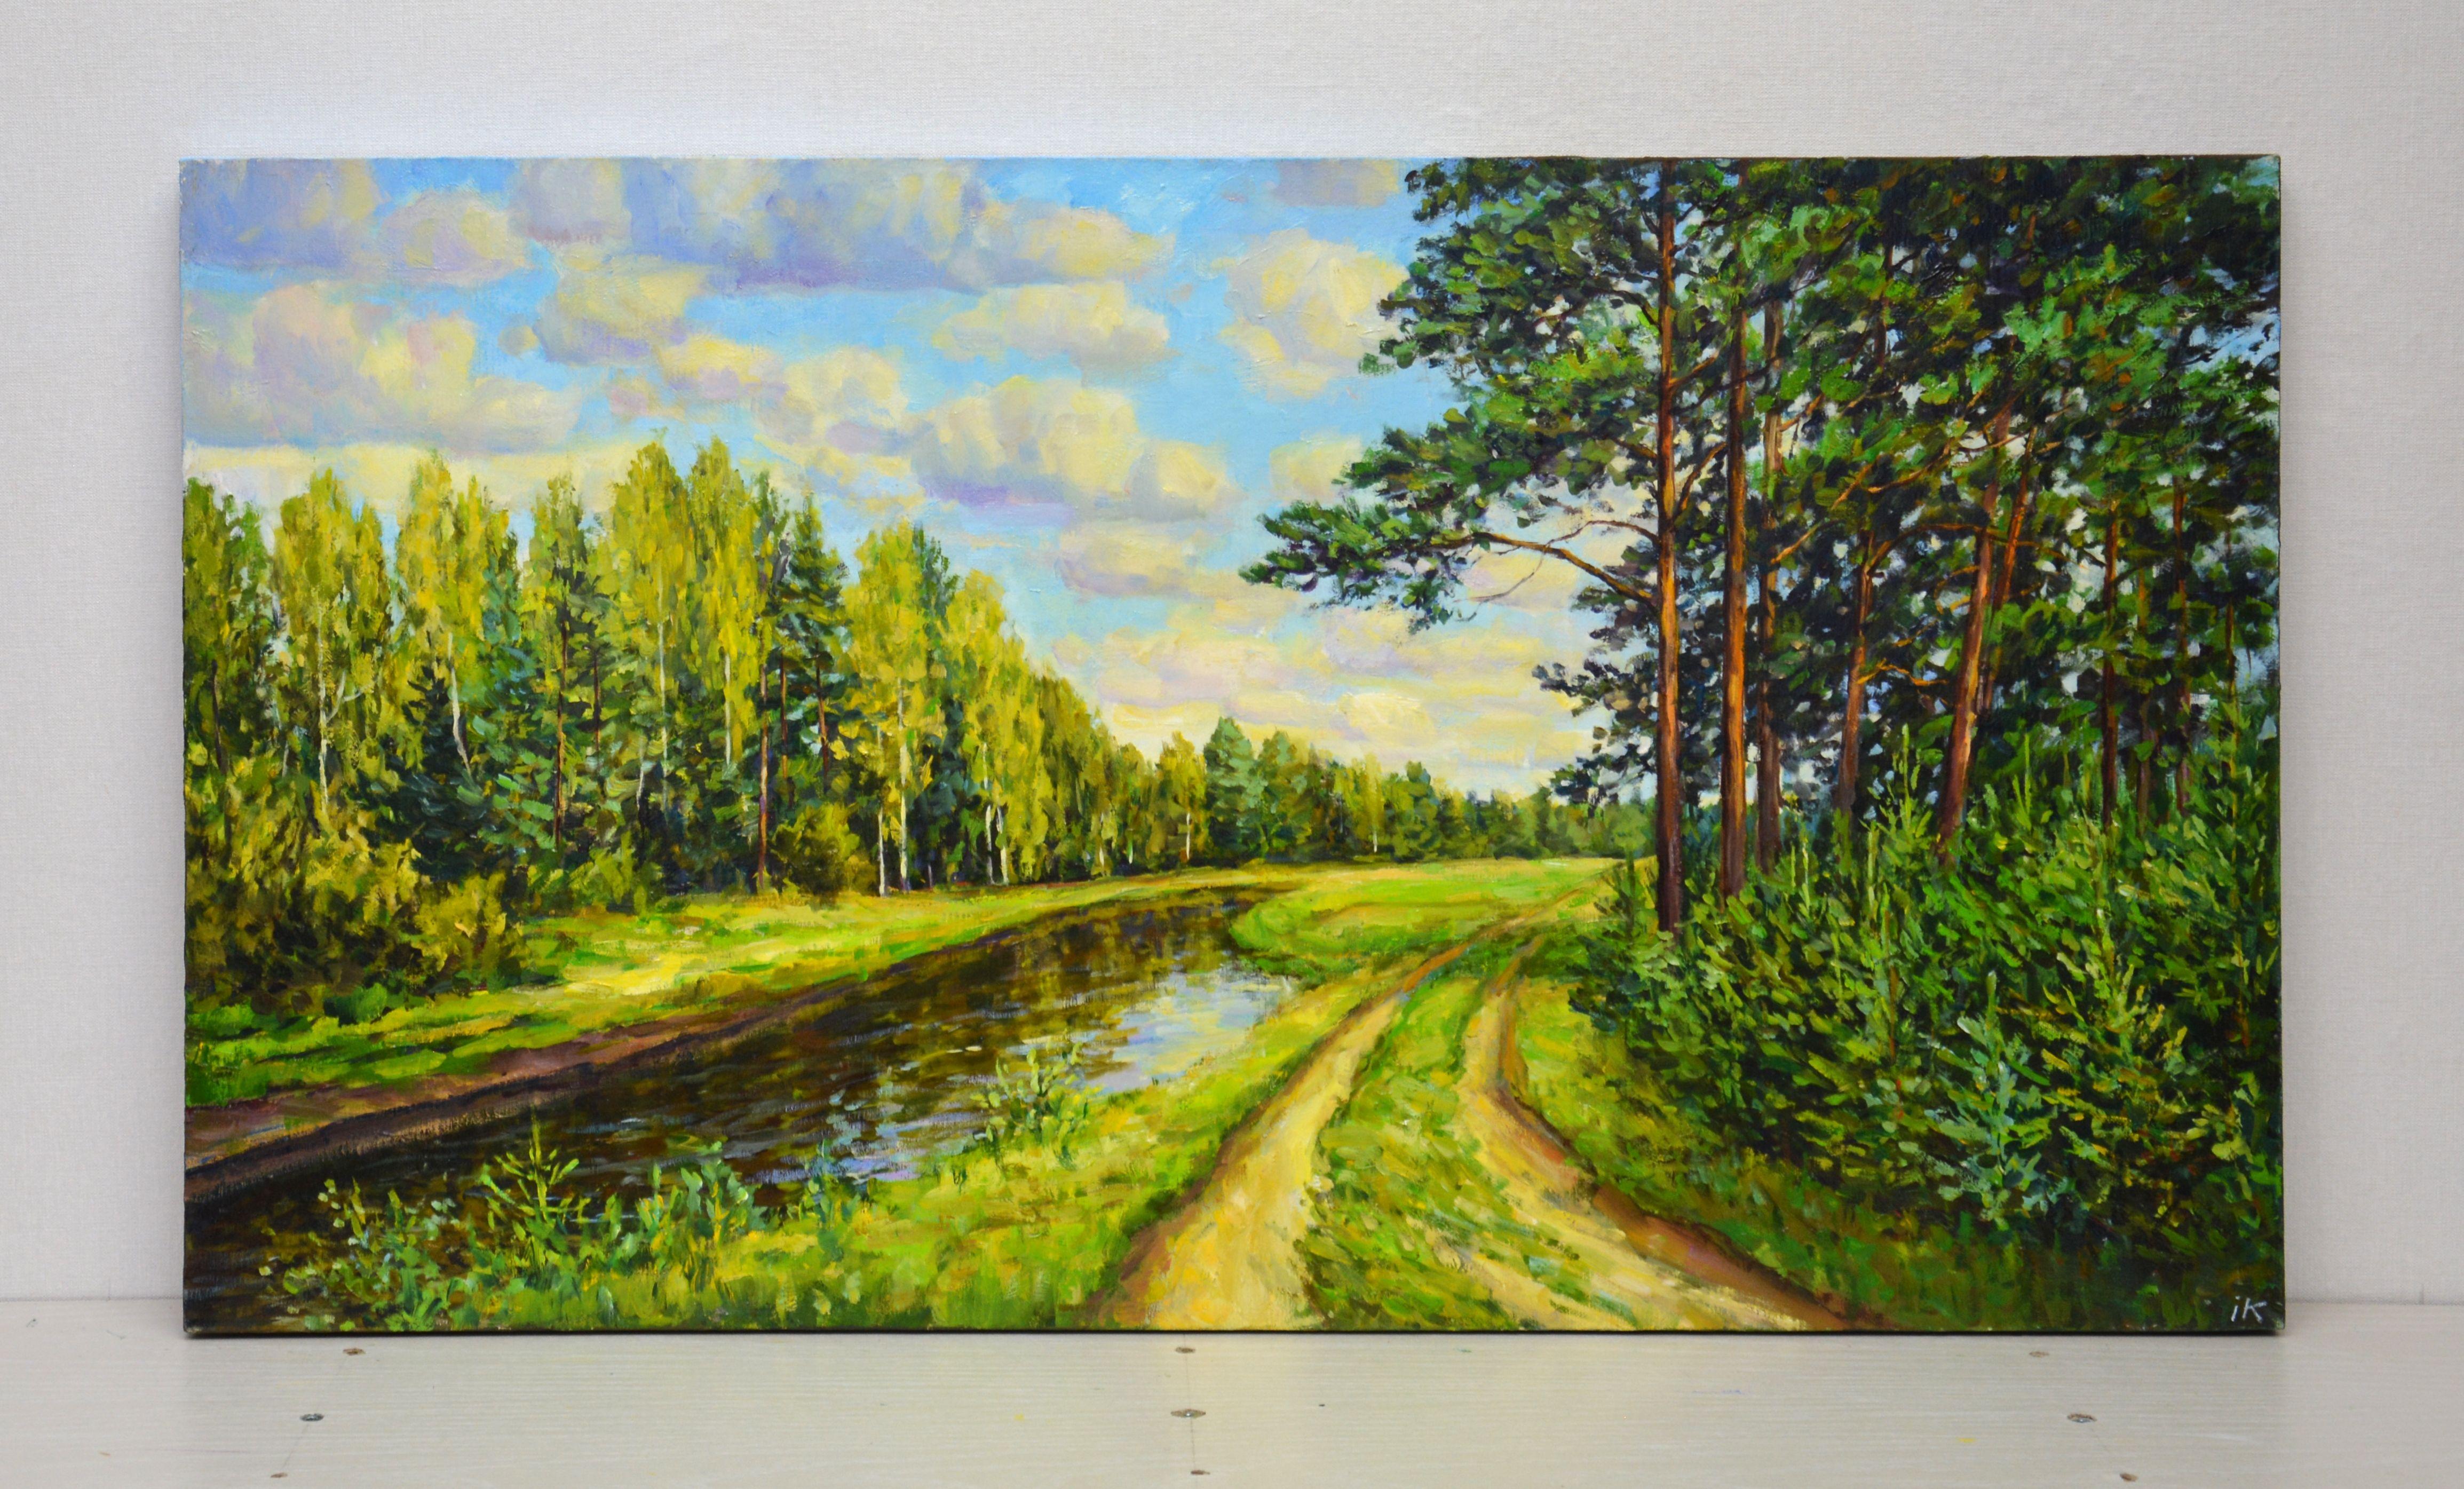 August., Peinture, huile sur toile - Réalisme Painting par Iryna Kastsova